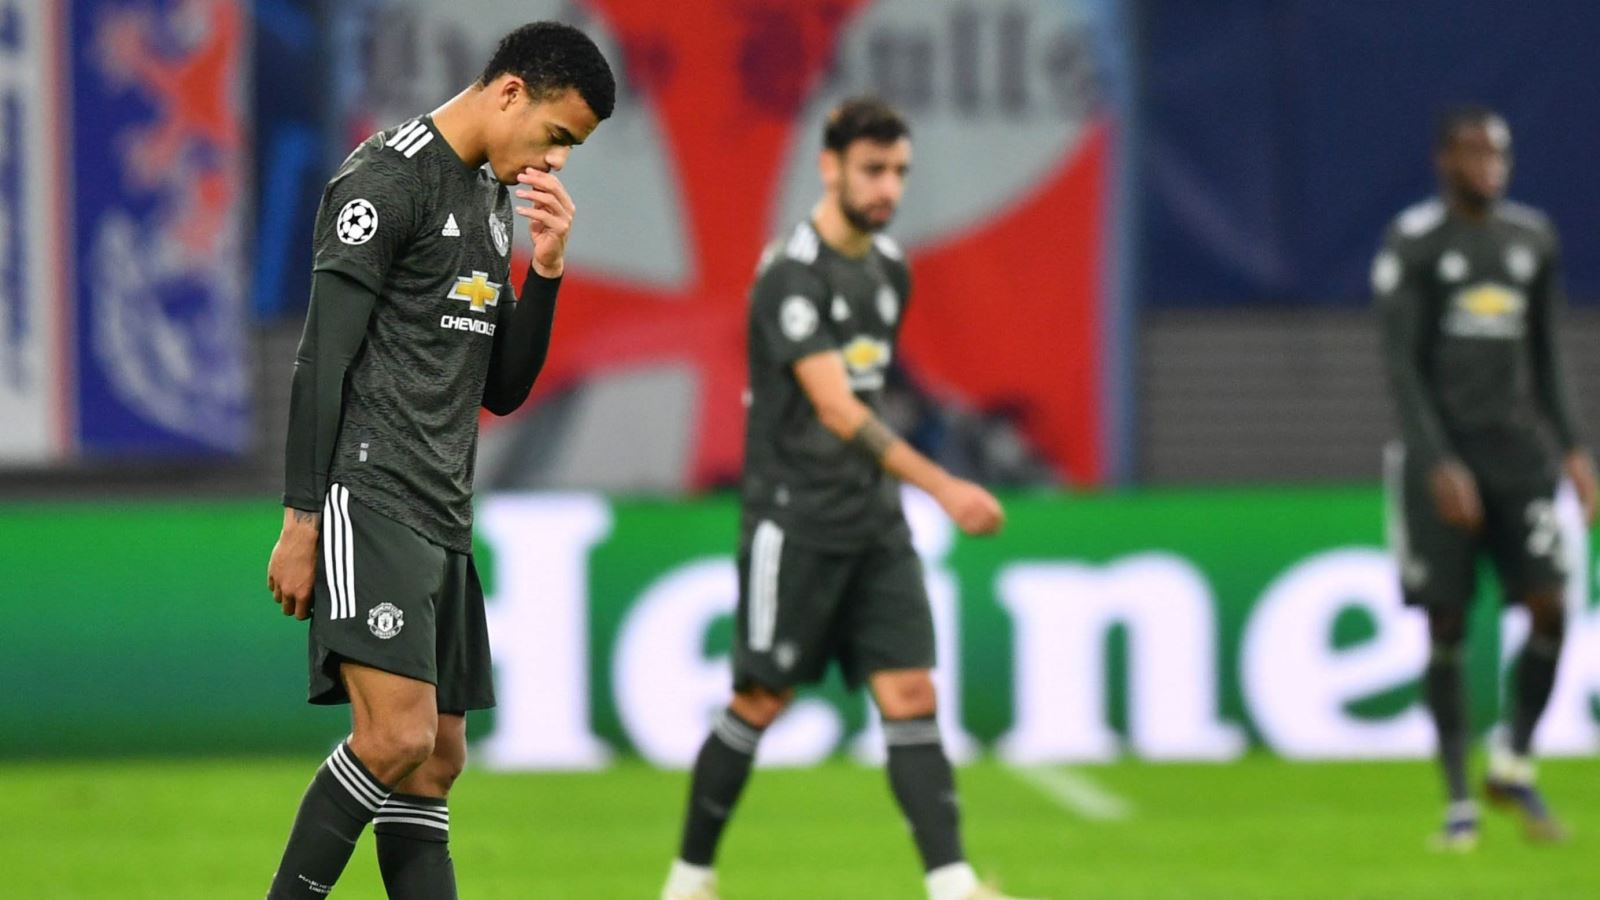 ĐIỂM NHẤN Leipzig 3-2 MU: Trả giá vì 'thói quen' chơi tệ hiệp 1. Hàng thủ lại là thảm họa